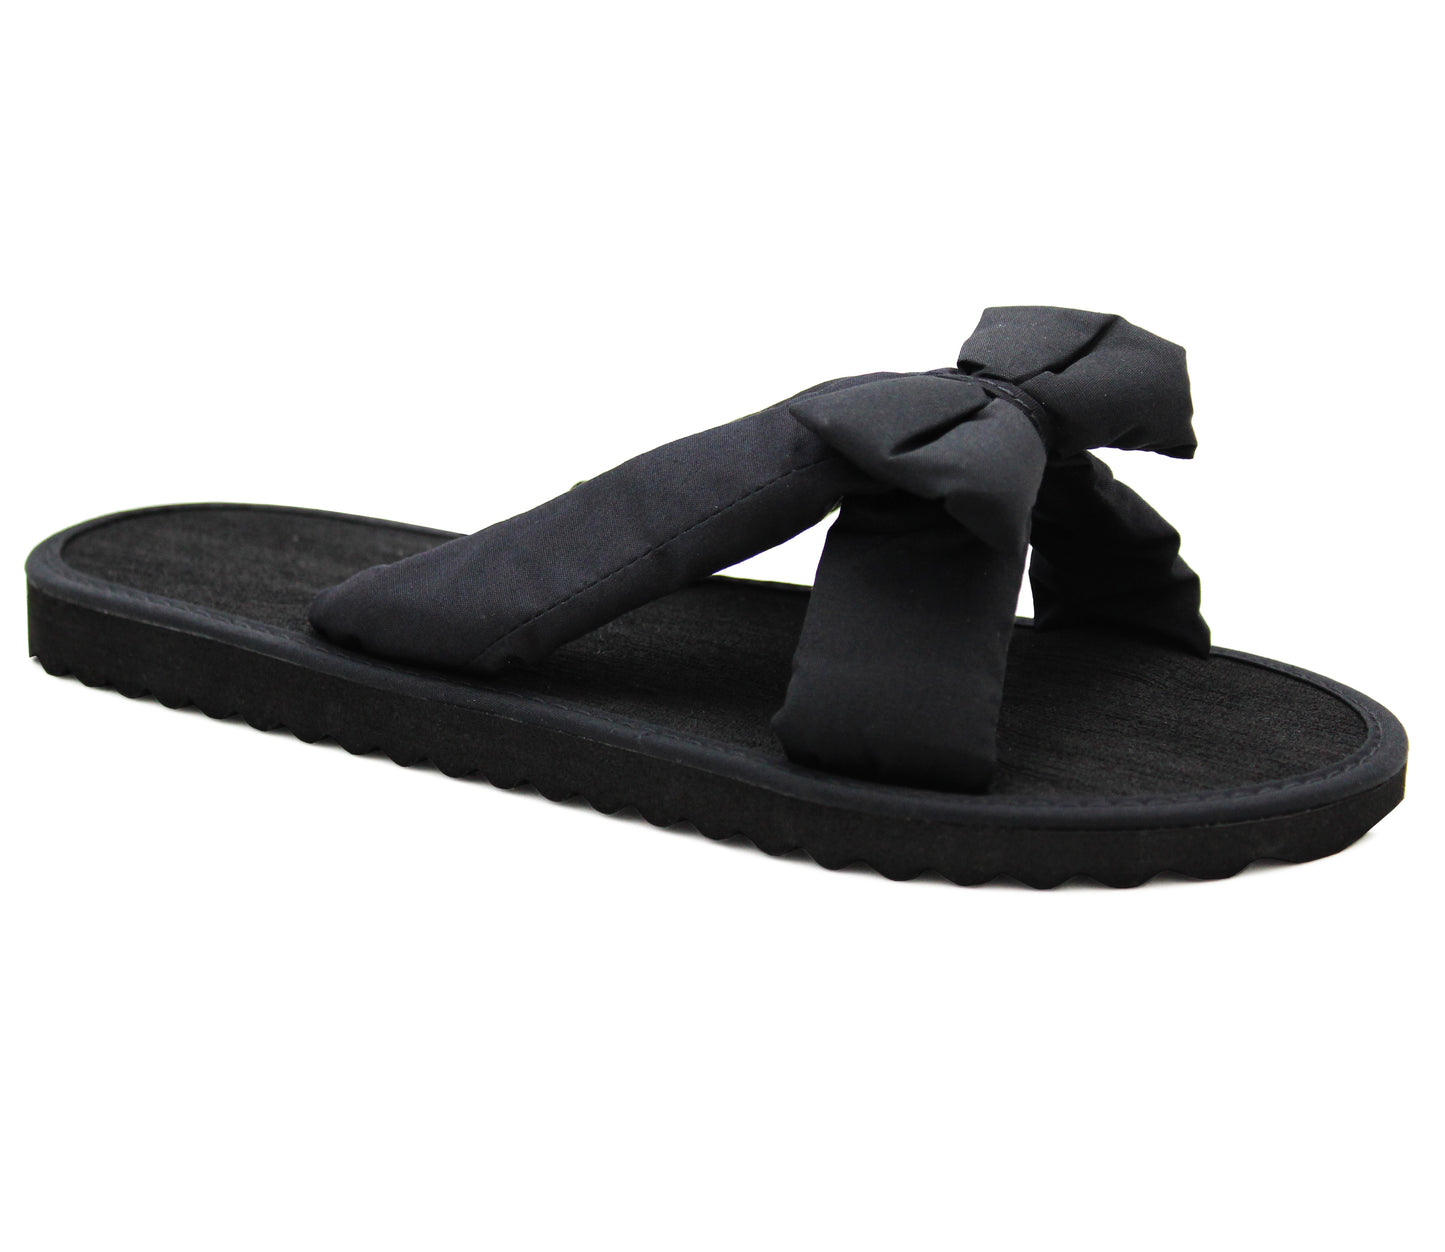 Girls Lightweight Floral Mule Sandals Slip On Sliders Summer Beach Flip Flops Ladies Flat Spa Pool Slides Plain Black